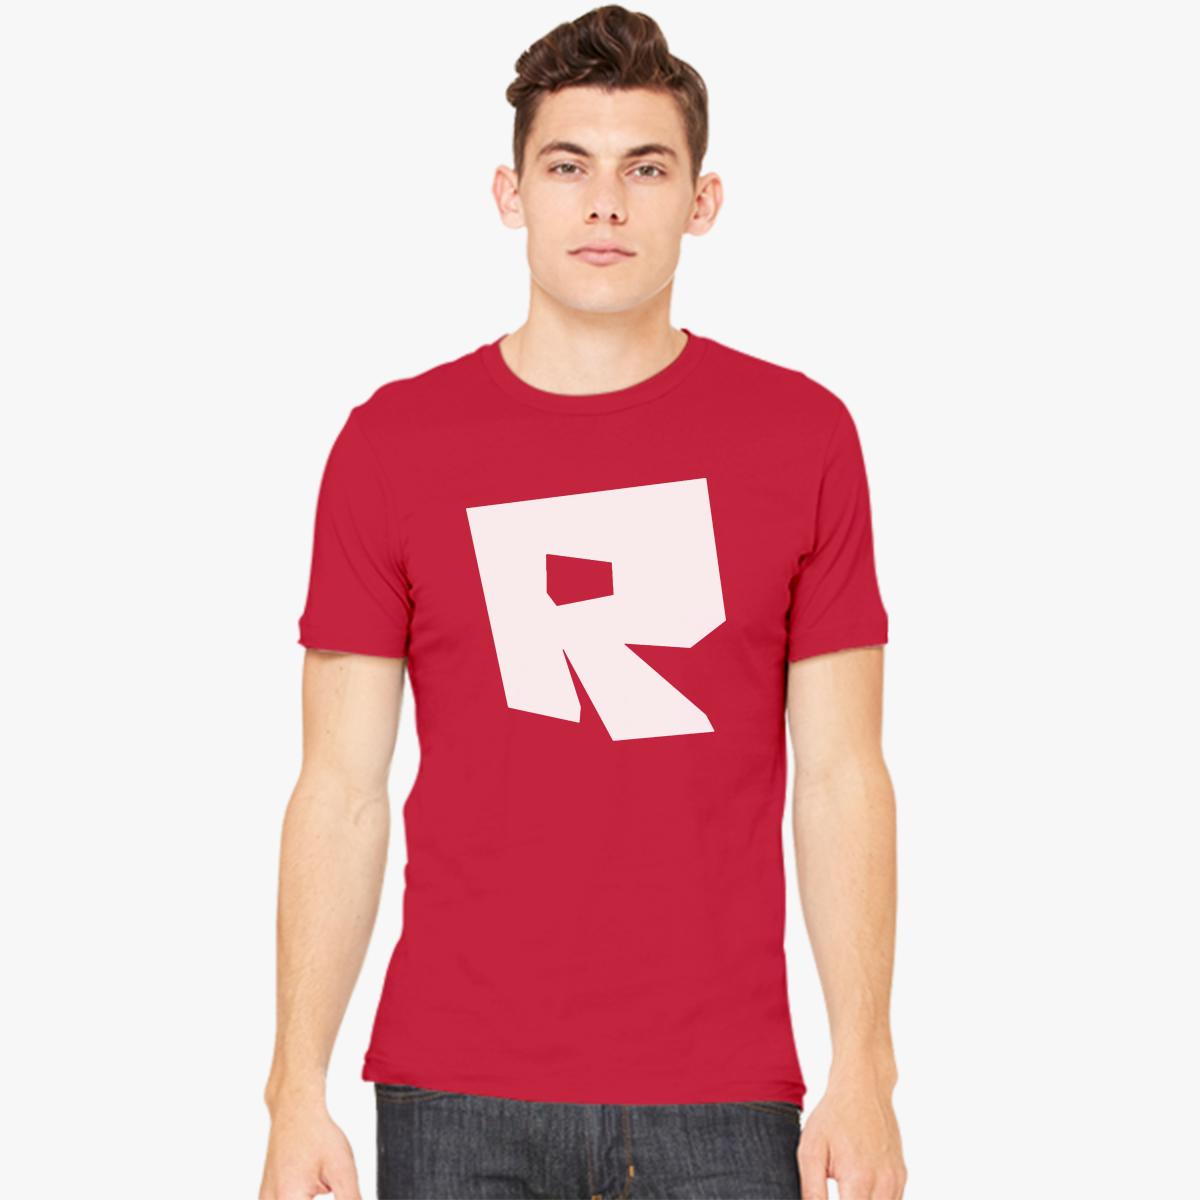 Roblox T Shirt Template 128x128